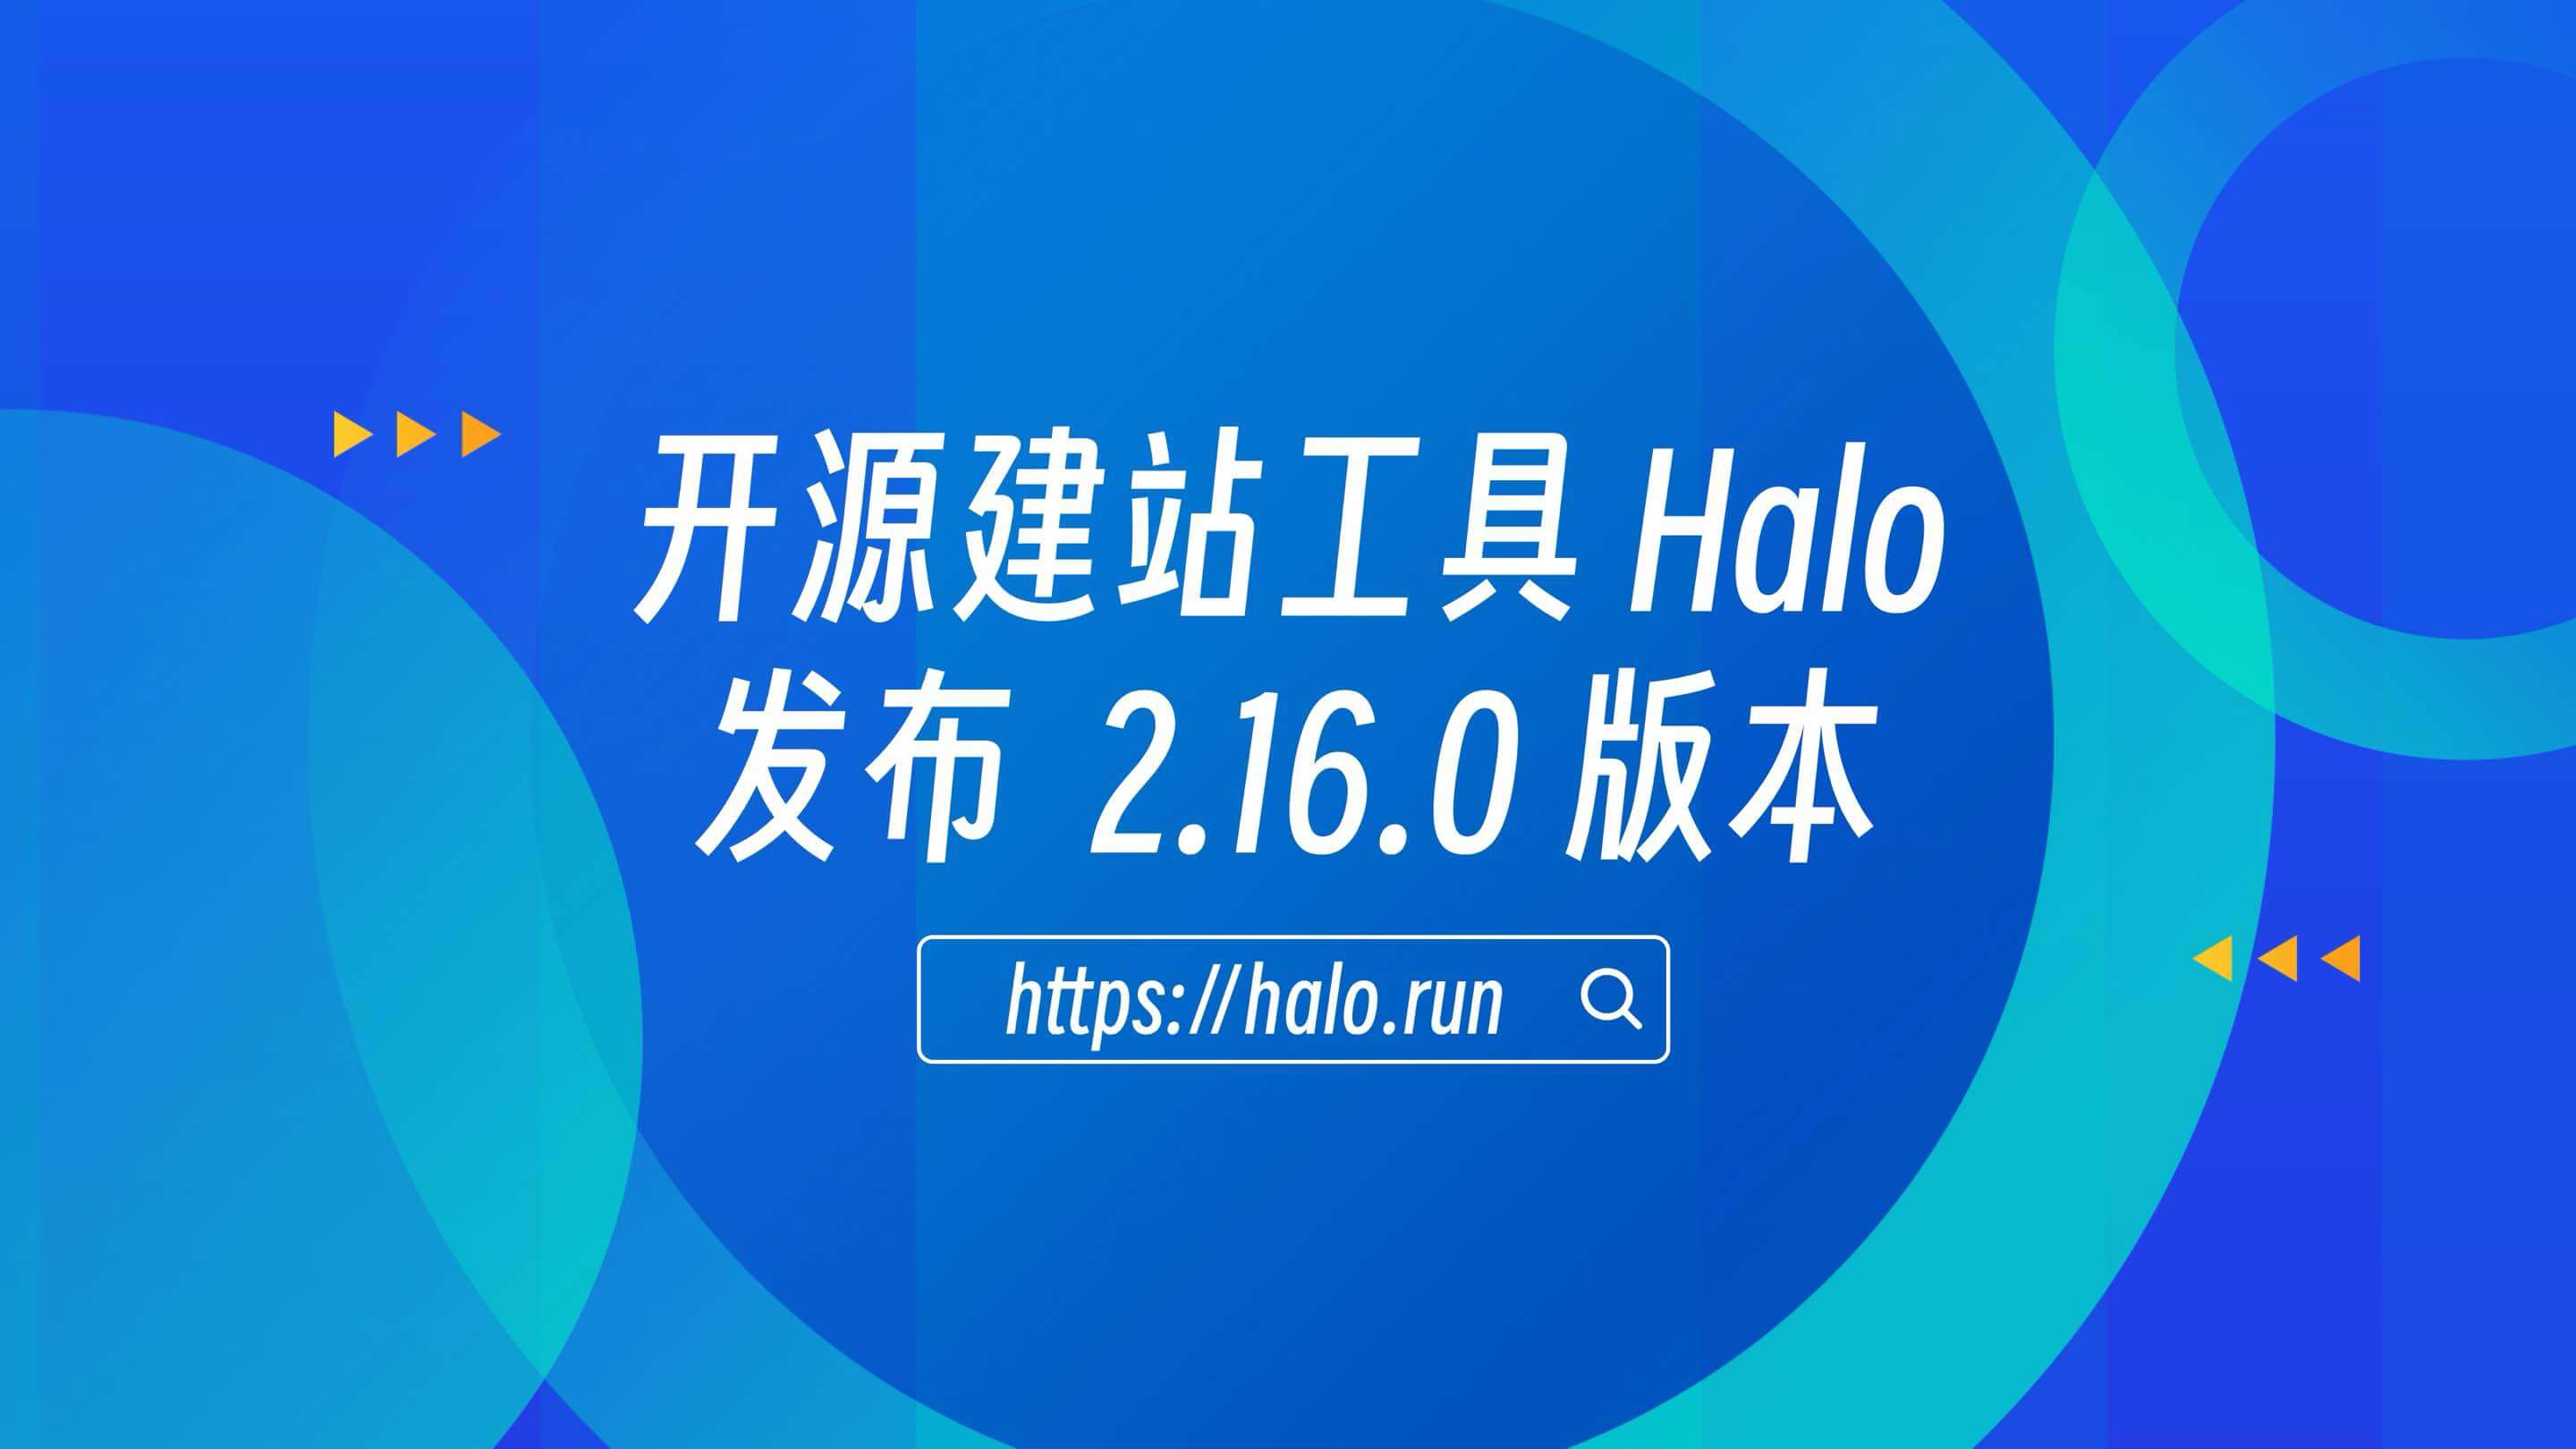 支持保持登录会话，Halo 2.16.0 发布